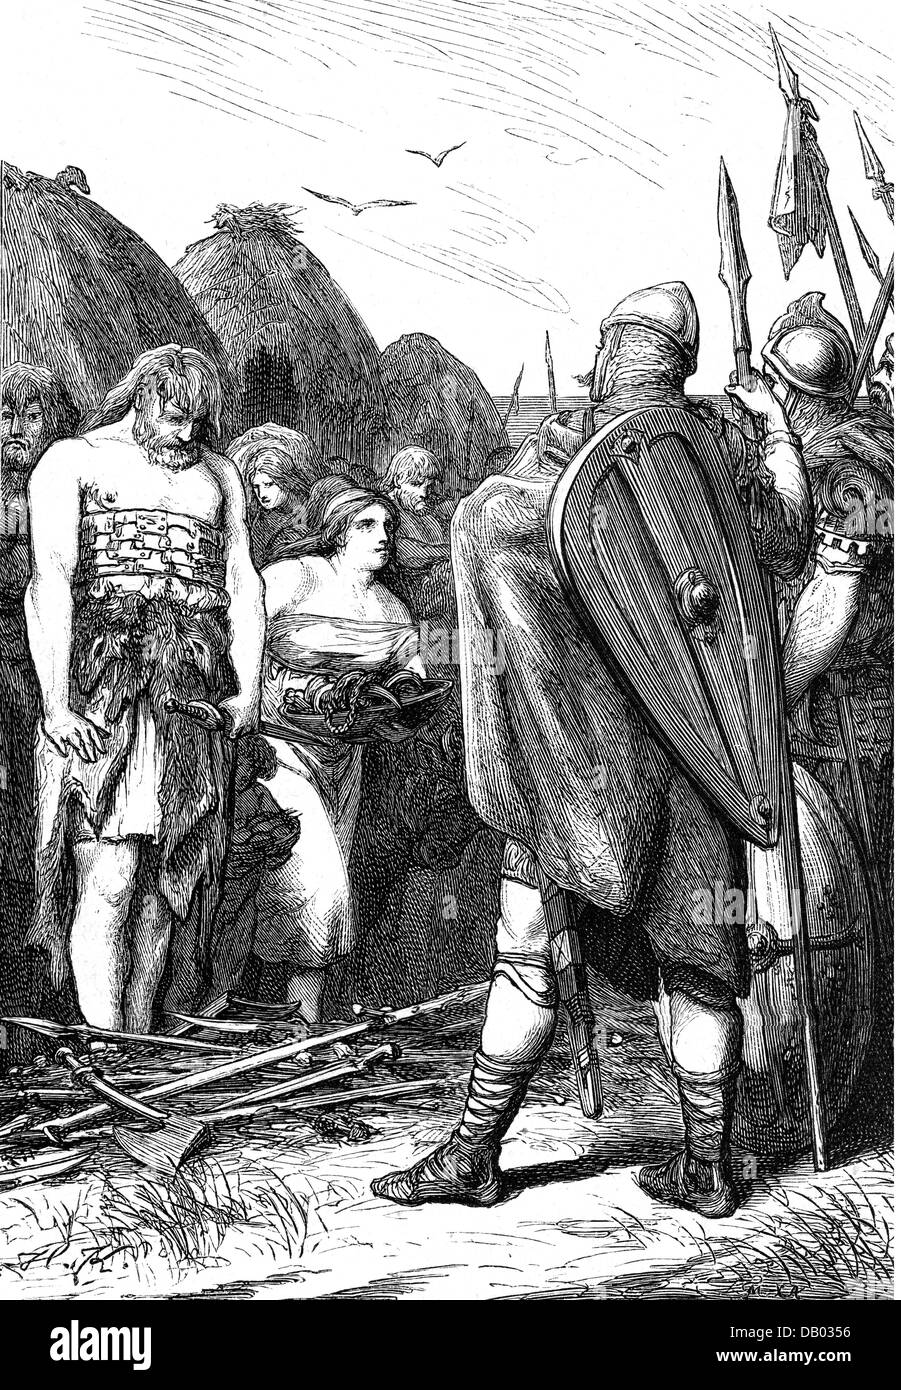 Moyen âge, guerres, Pepin de Herstal conquérant Frise, 690/695, droits additionnels-Clearences-non disponible Banque D'Images